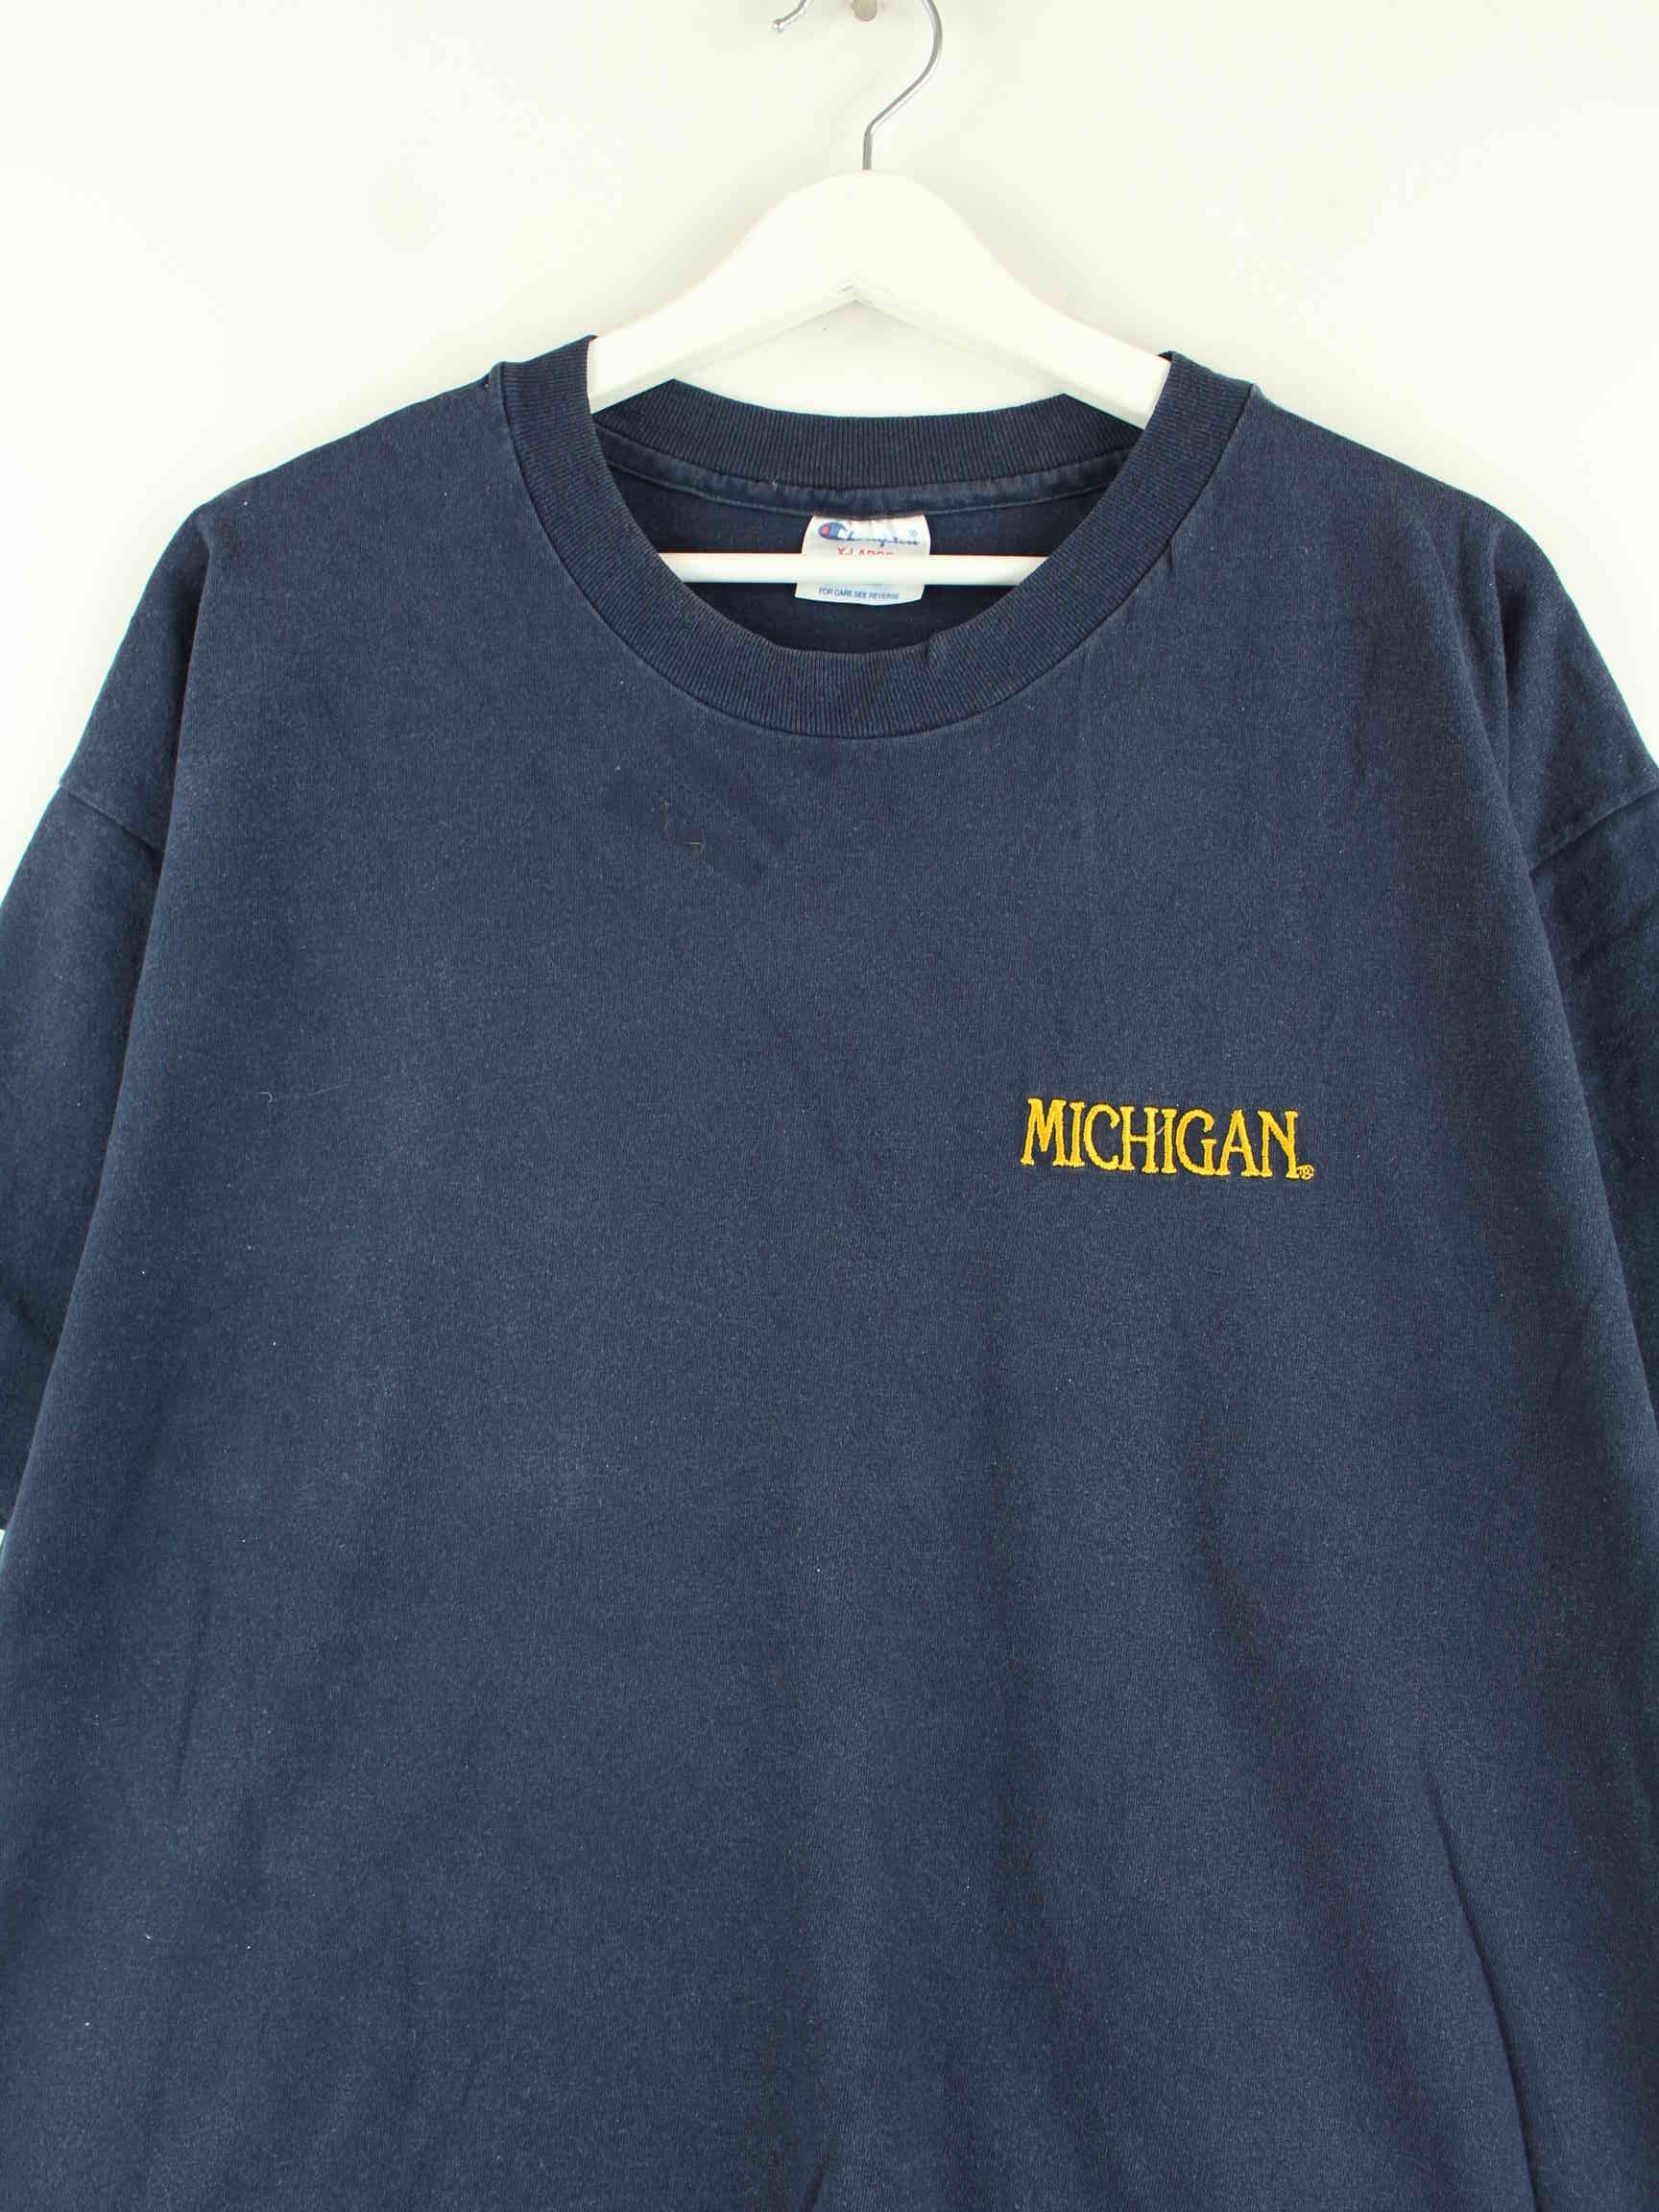 Champion Michigan Embrodiered Single Stitched T-Shirt Blau XL (detail image 1)